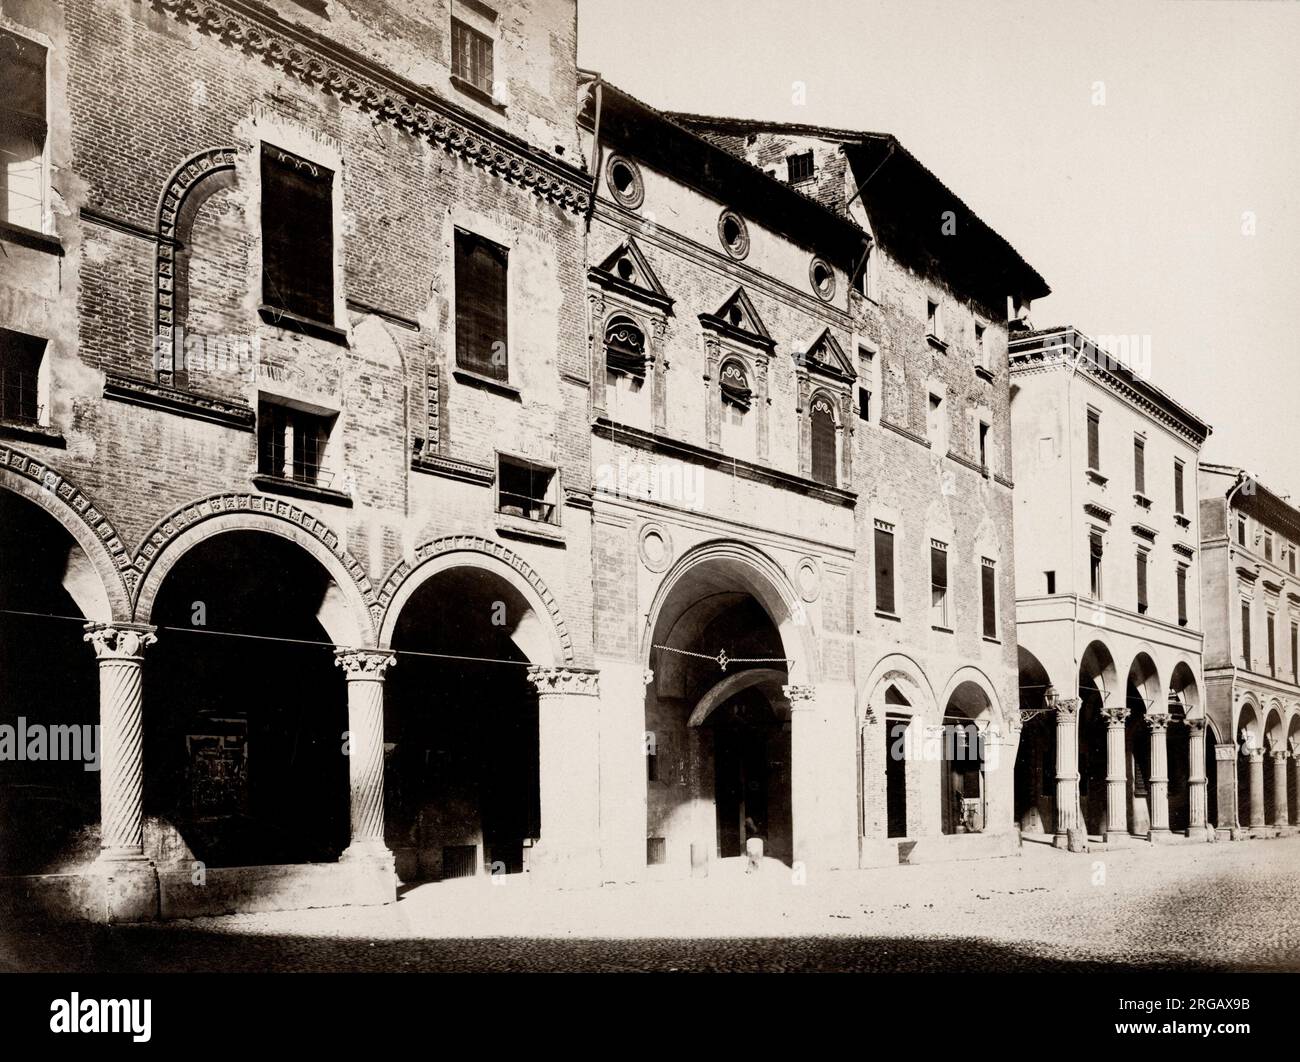 Photographie vintage du XIXe siècle: Piazza Santo Stefano également connu sous le nom de Piazza delle Sette Chiese est une piazza de Bologne, Italie Banque D'Images